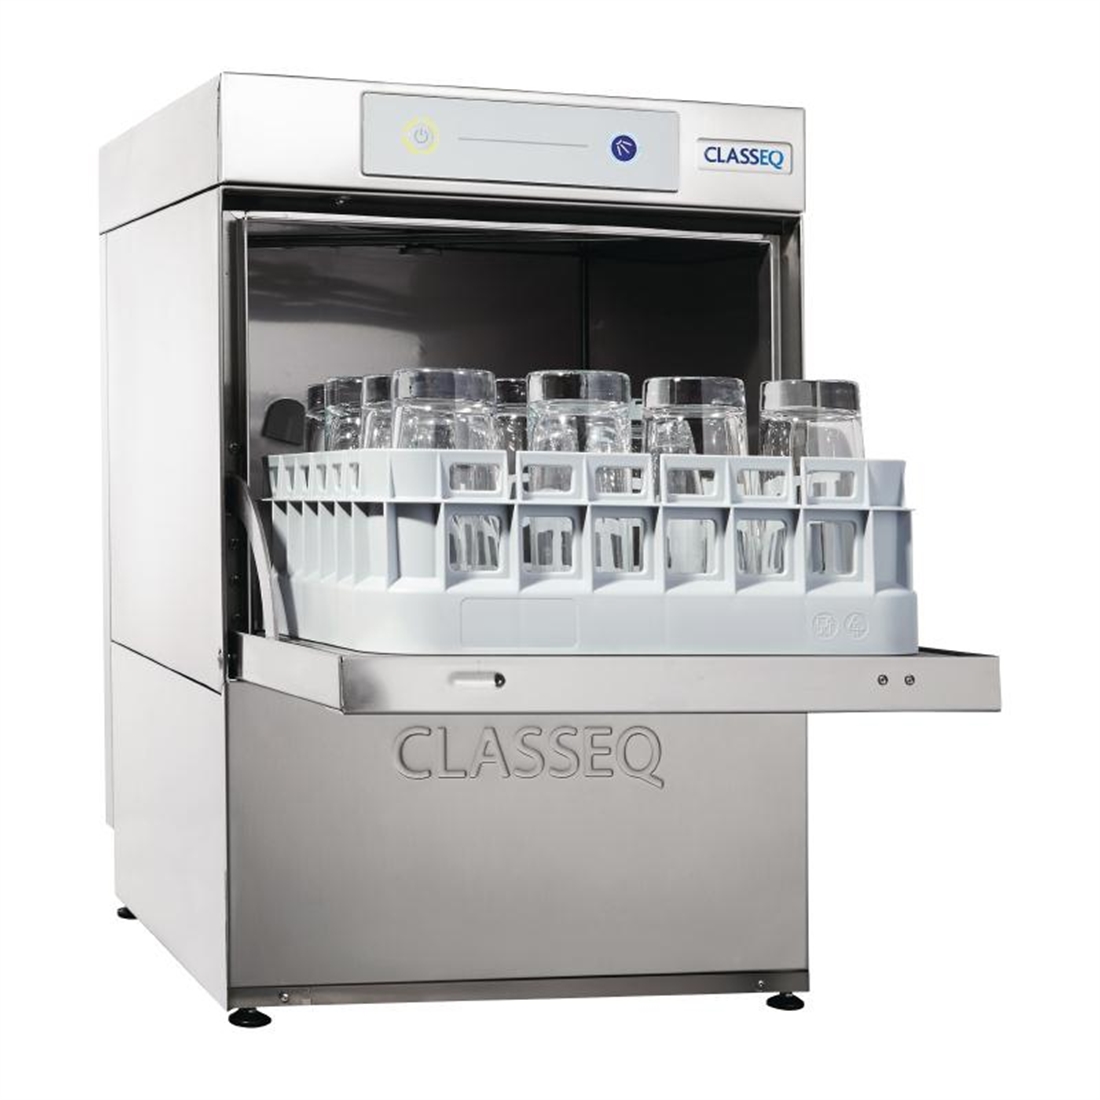 Classeq G350P Glasswasher